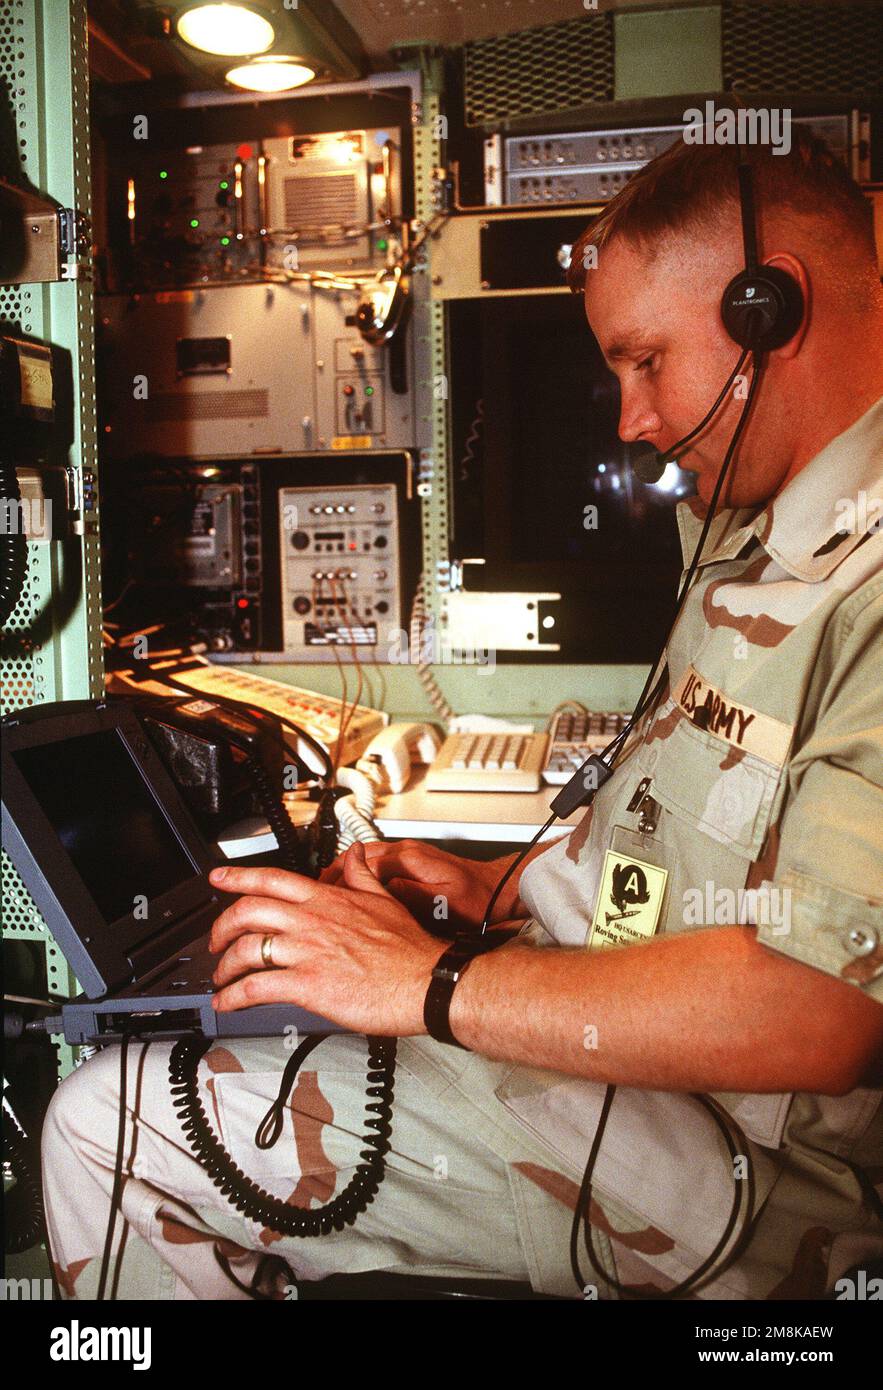 CWO Thomas Gallo, Air Defense Command and Control Systems Technician, 6. Air Defense Brigade, Fort Bliss Texas verwendet einen Laptop-Computer für die Arbeit an einem Air Defense Systems Integrator, der sich in einer aktiven Verteidigungssäule befindet. Betreff Betrieb/Serie: ROVING SANDS '95 Basis: Fort Bliss Bundesstaat: Texas (TX) Land: Vereinigte Staaten von Amerika (USA) Stockfoto